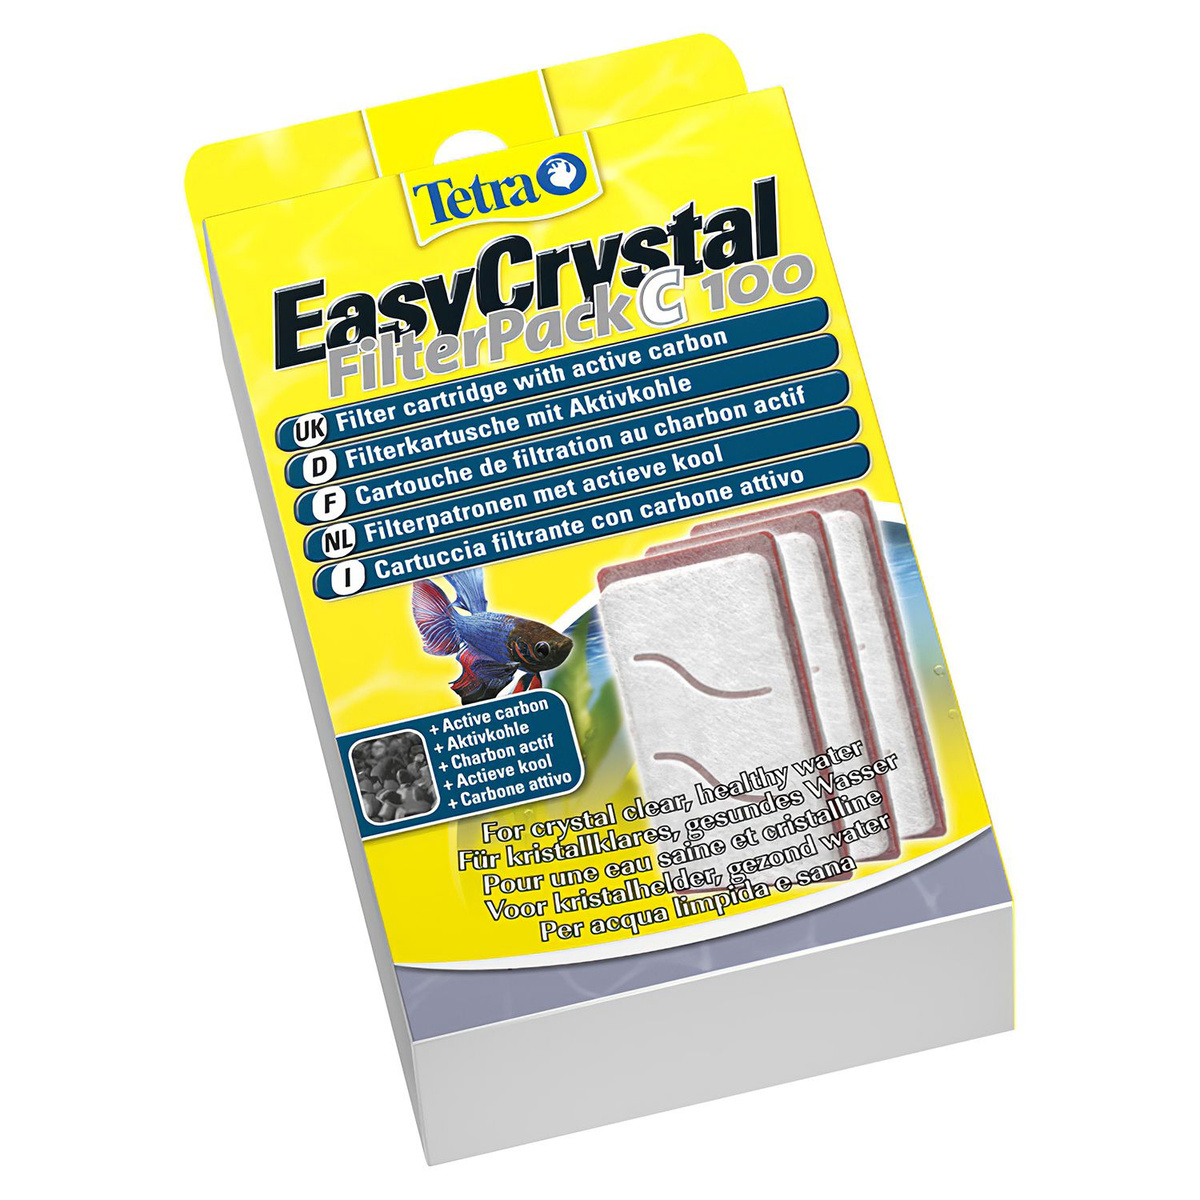 Tetra EasyCrystal FilterPack C 100